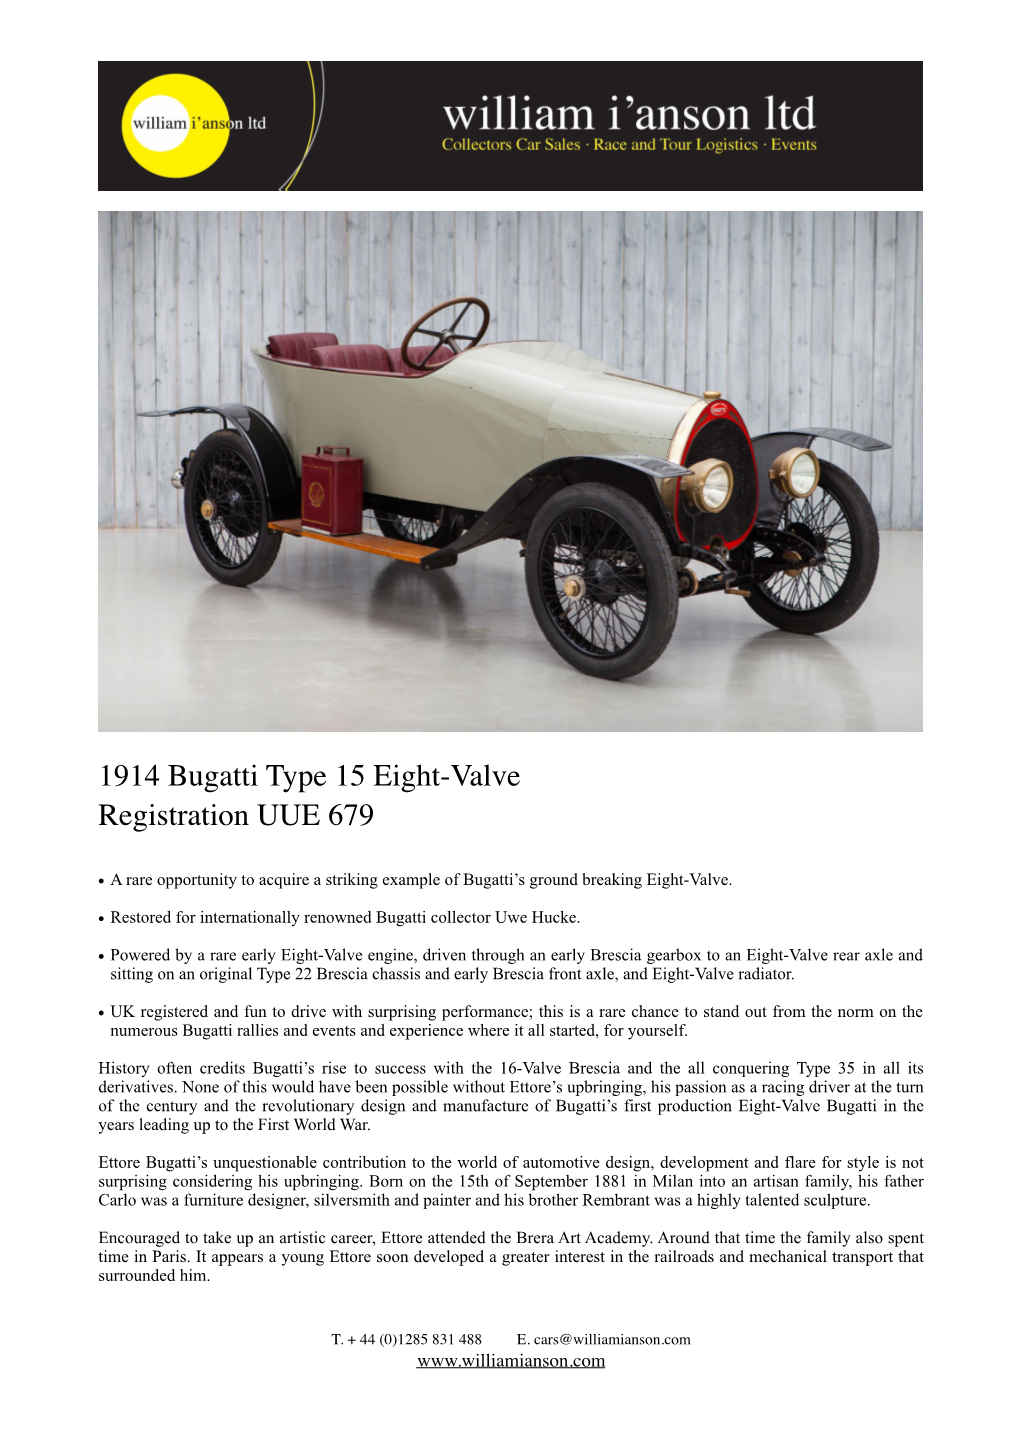 1914 Bugatti Eight-Valve